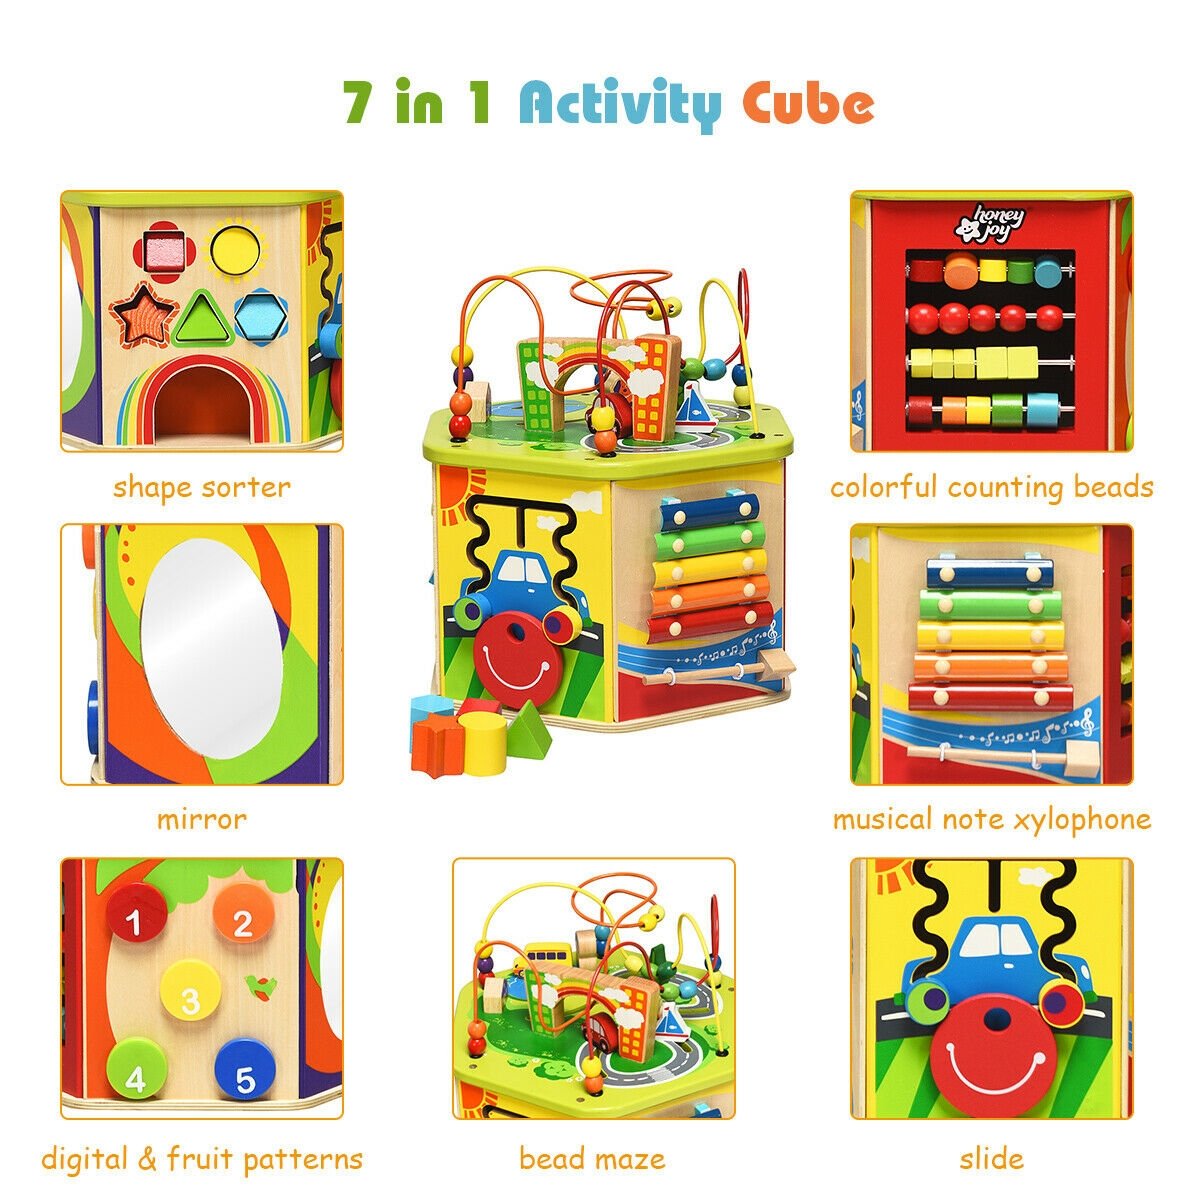 7-in-1 Wooden Activity Cube Toy, Multicolor - Gallery Canada